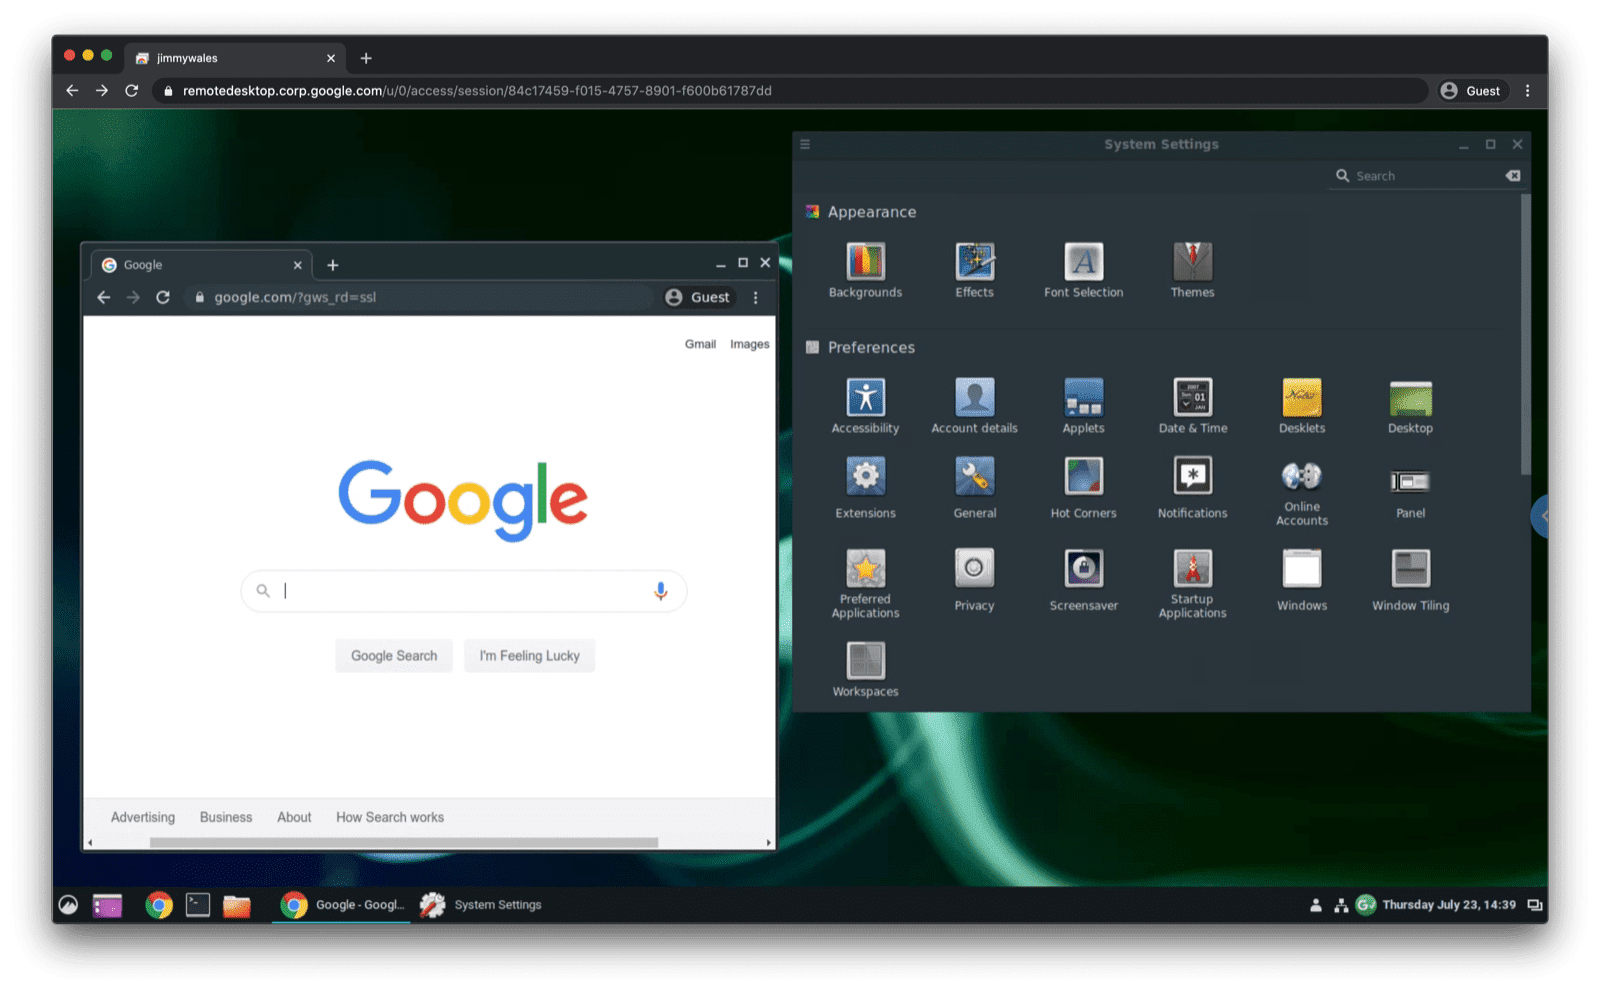 macOS Chrome में ब्राउज़र टैब पर Ubuntu Linux को स्ट्रीम किया जाता है (अभी फ़ुल स्क्रीन मोड में नहीं चल रहा है).